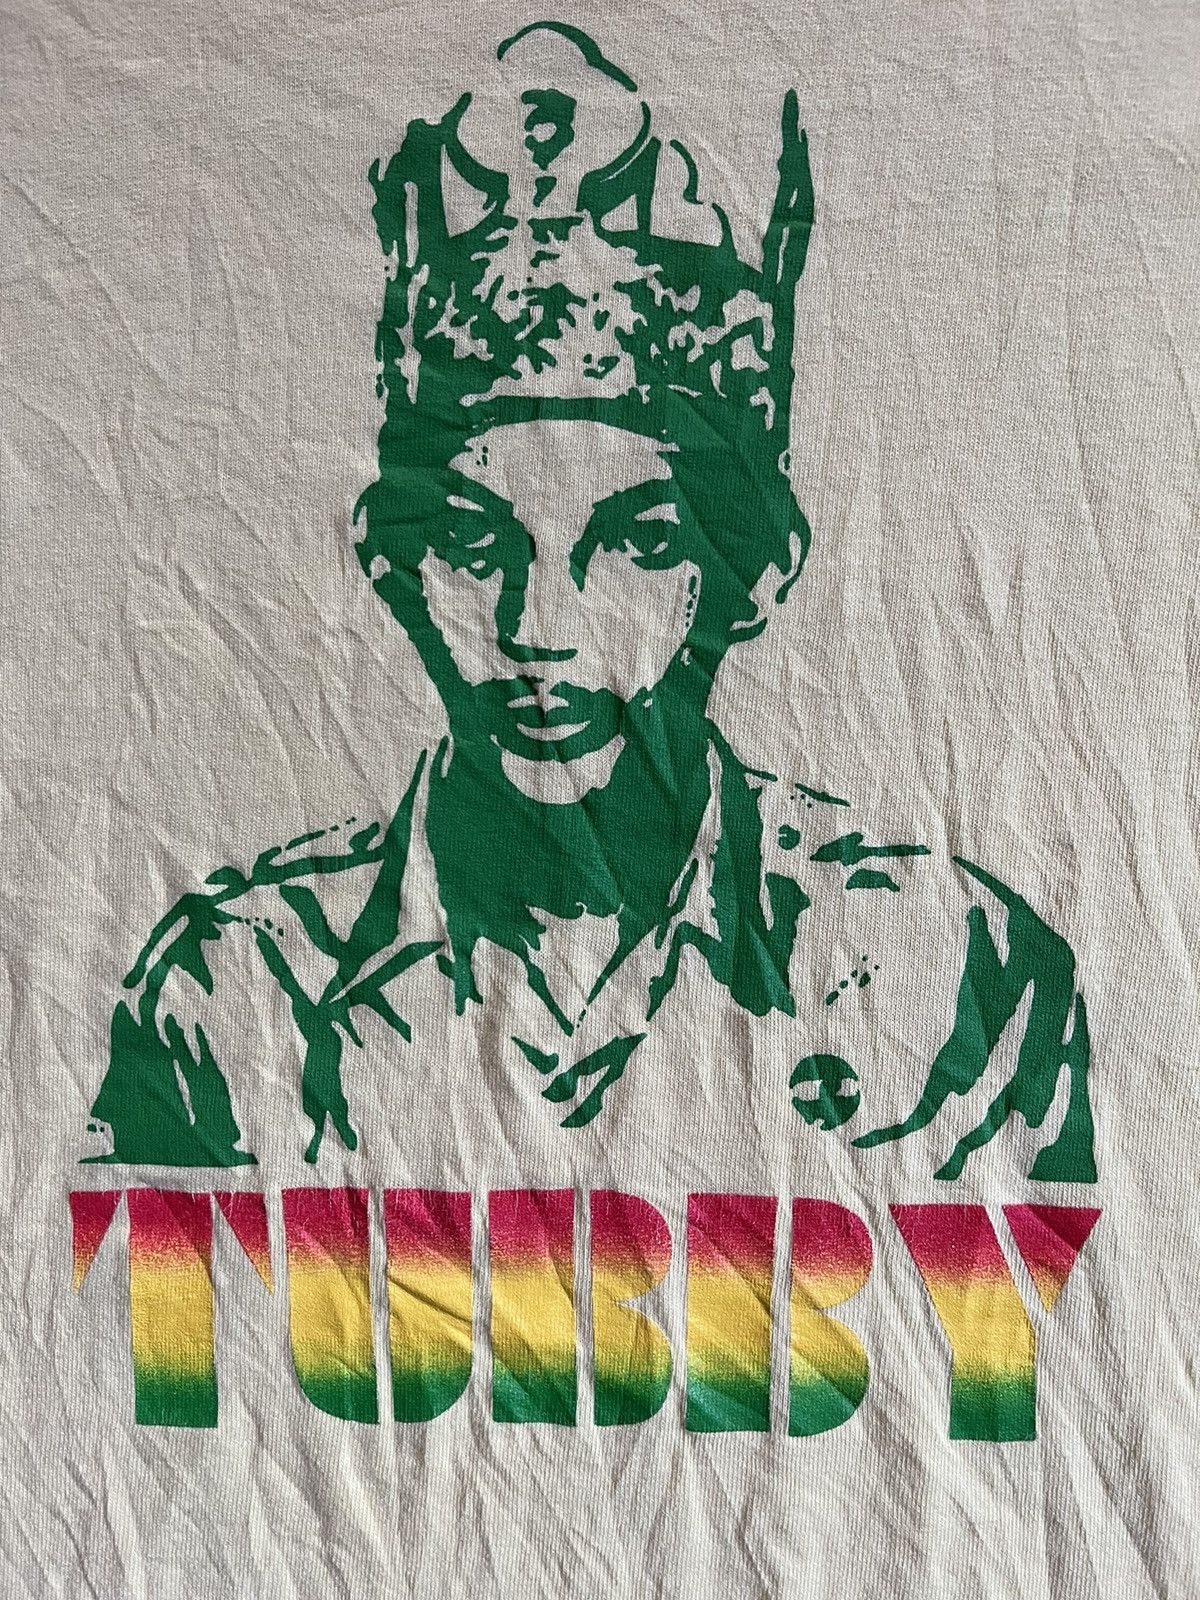 Supreme Supreme 2001 King Tubby T-Shirt | Grailed